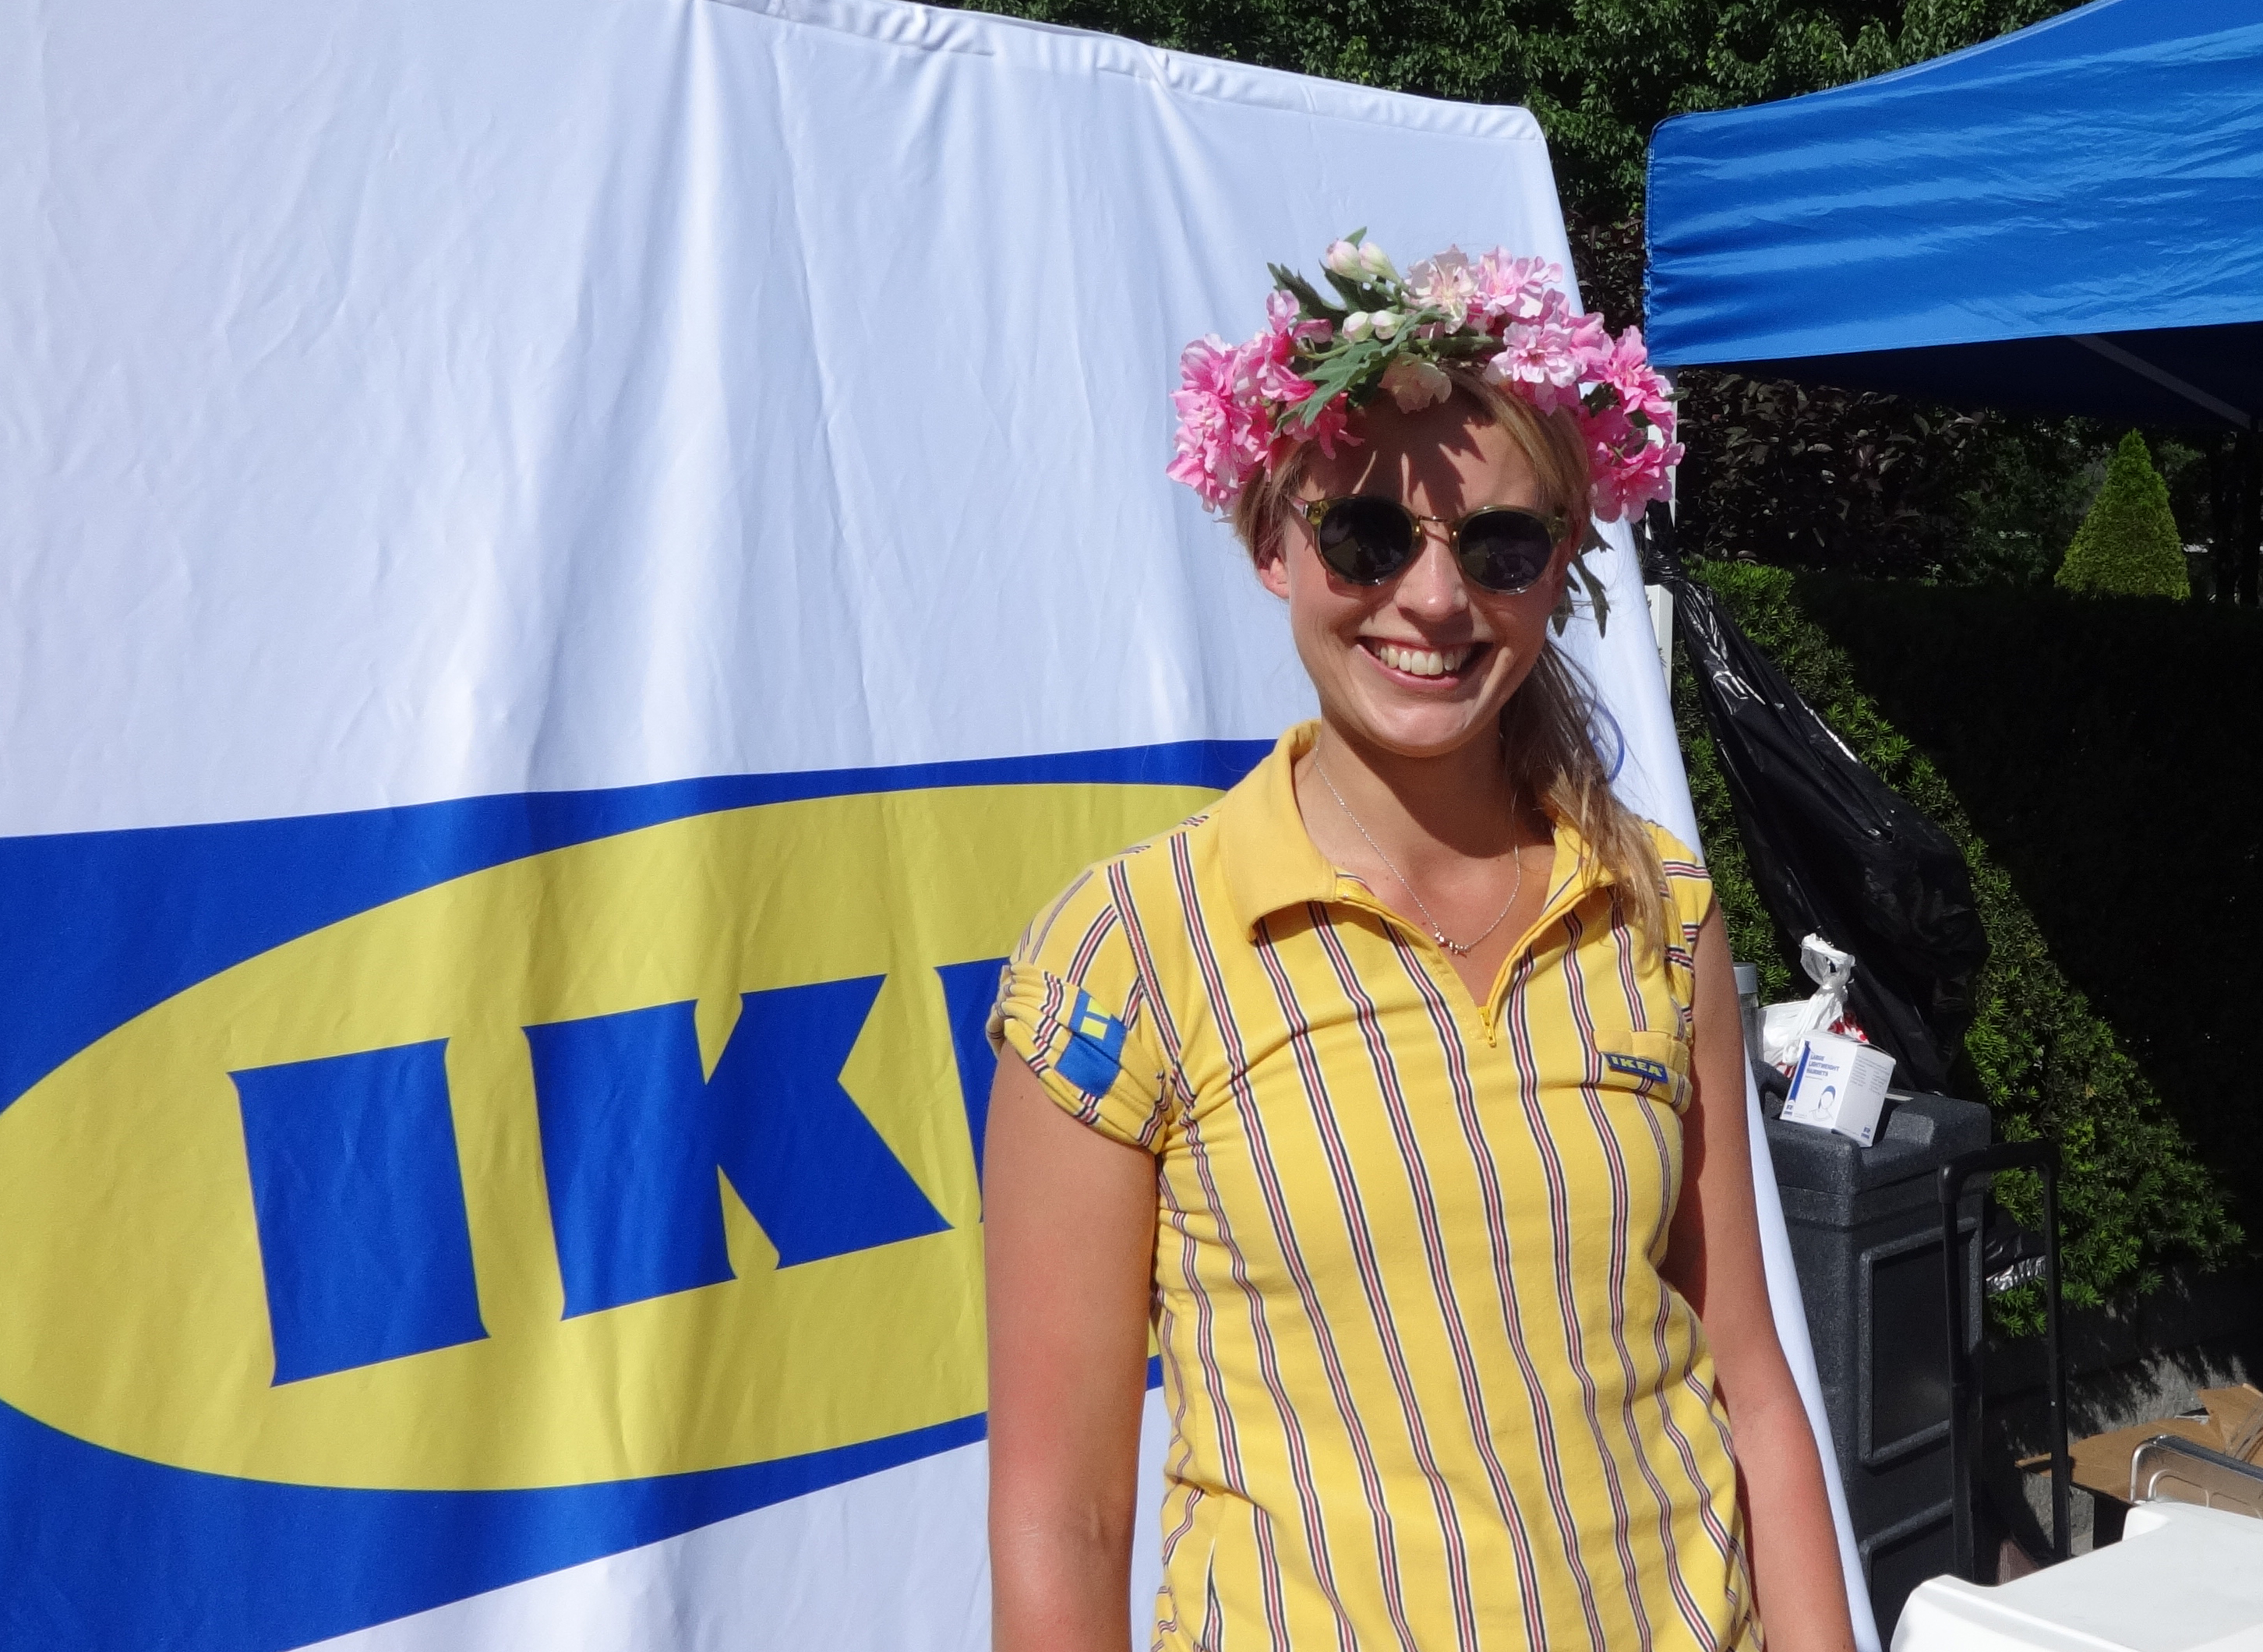 Ikea Swede lady